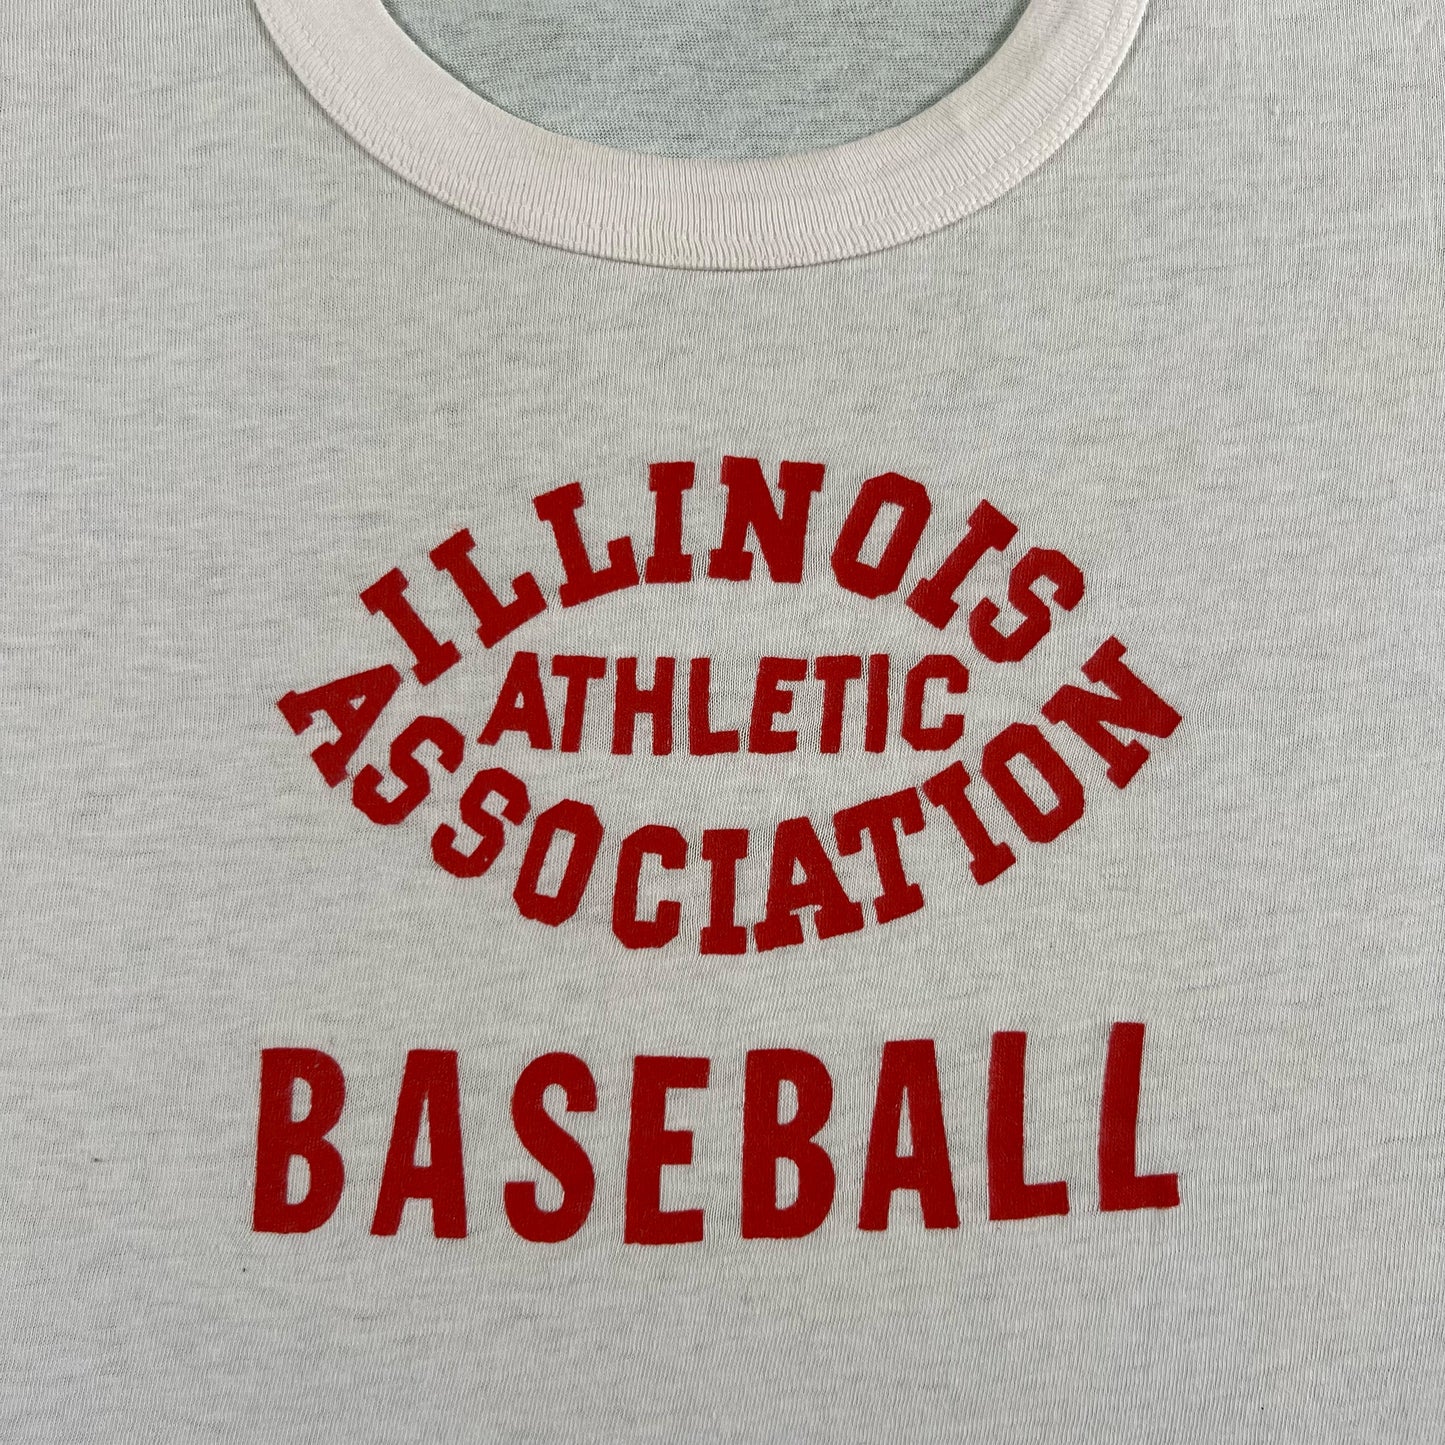 50s Illinois Baseball Tee- M